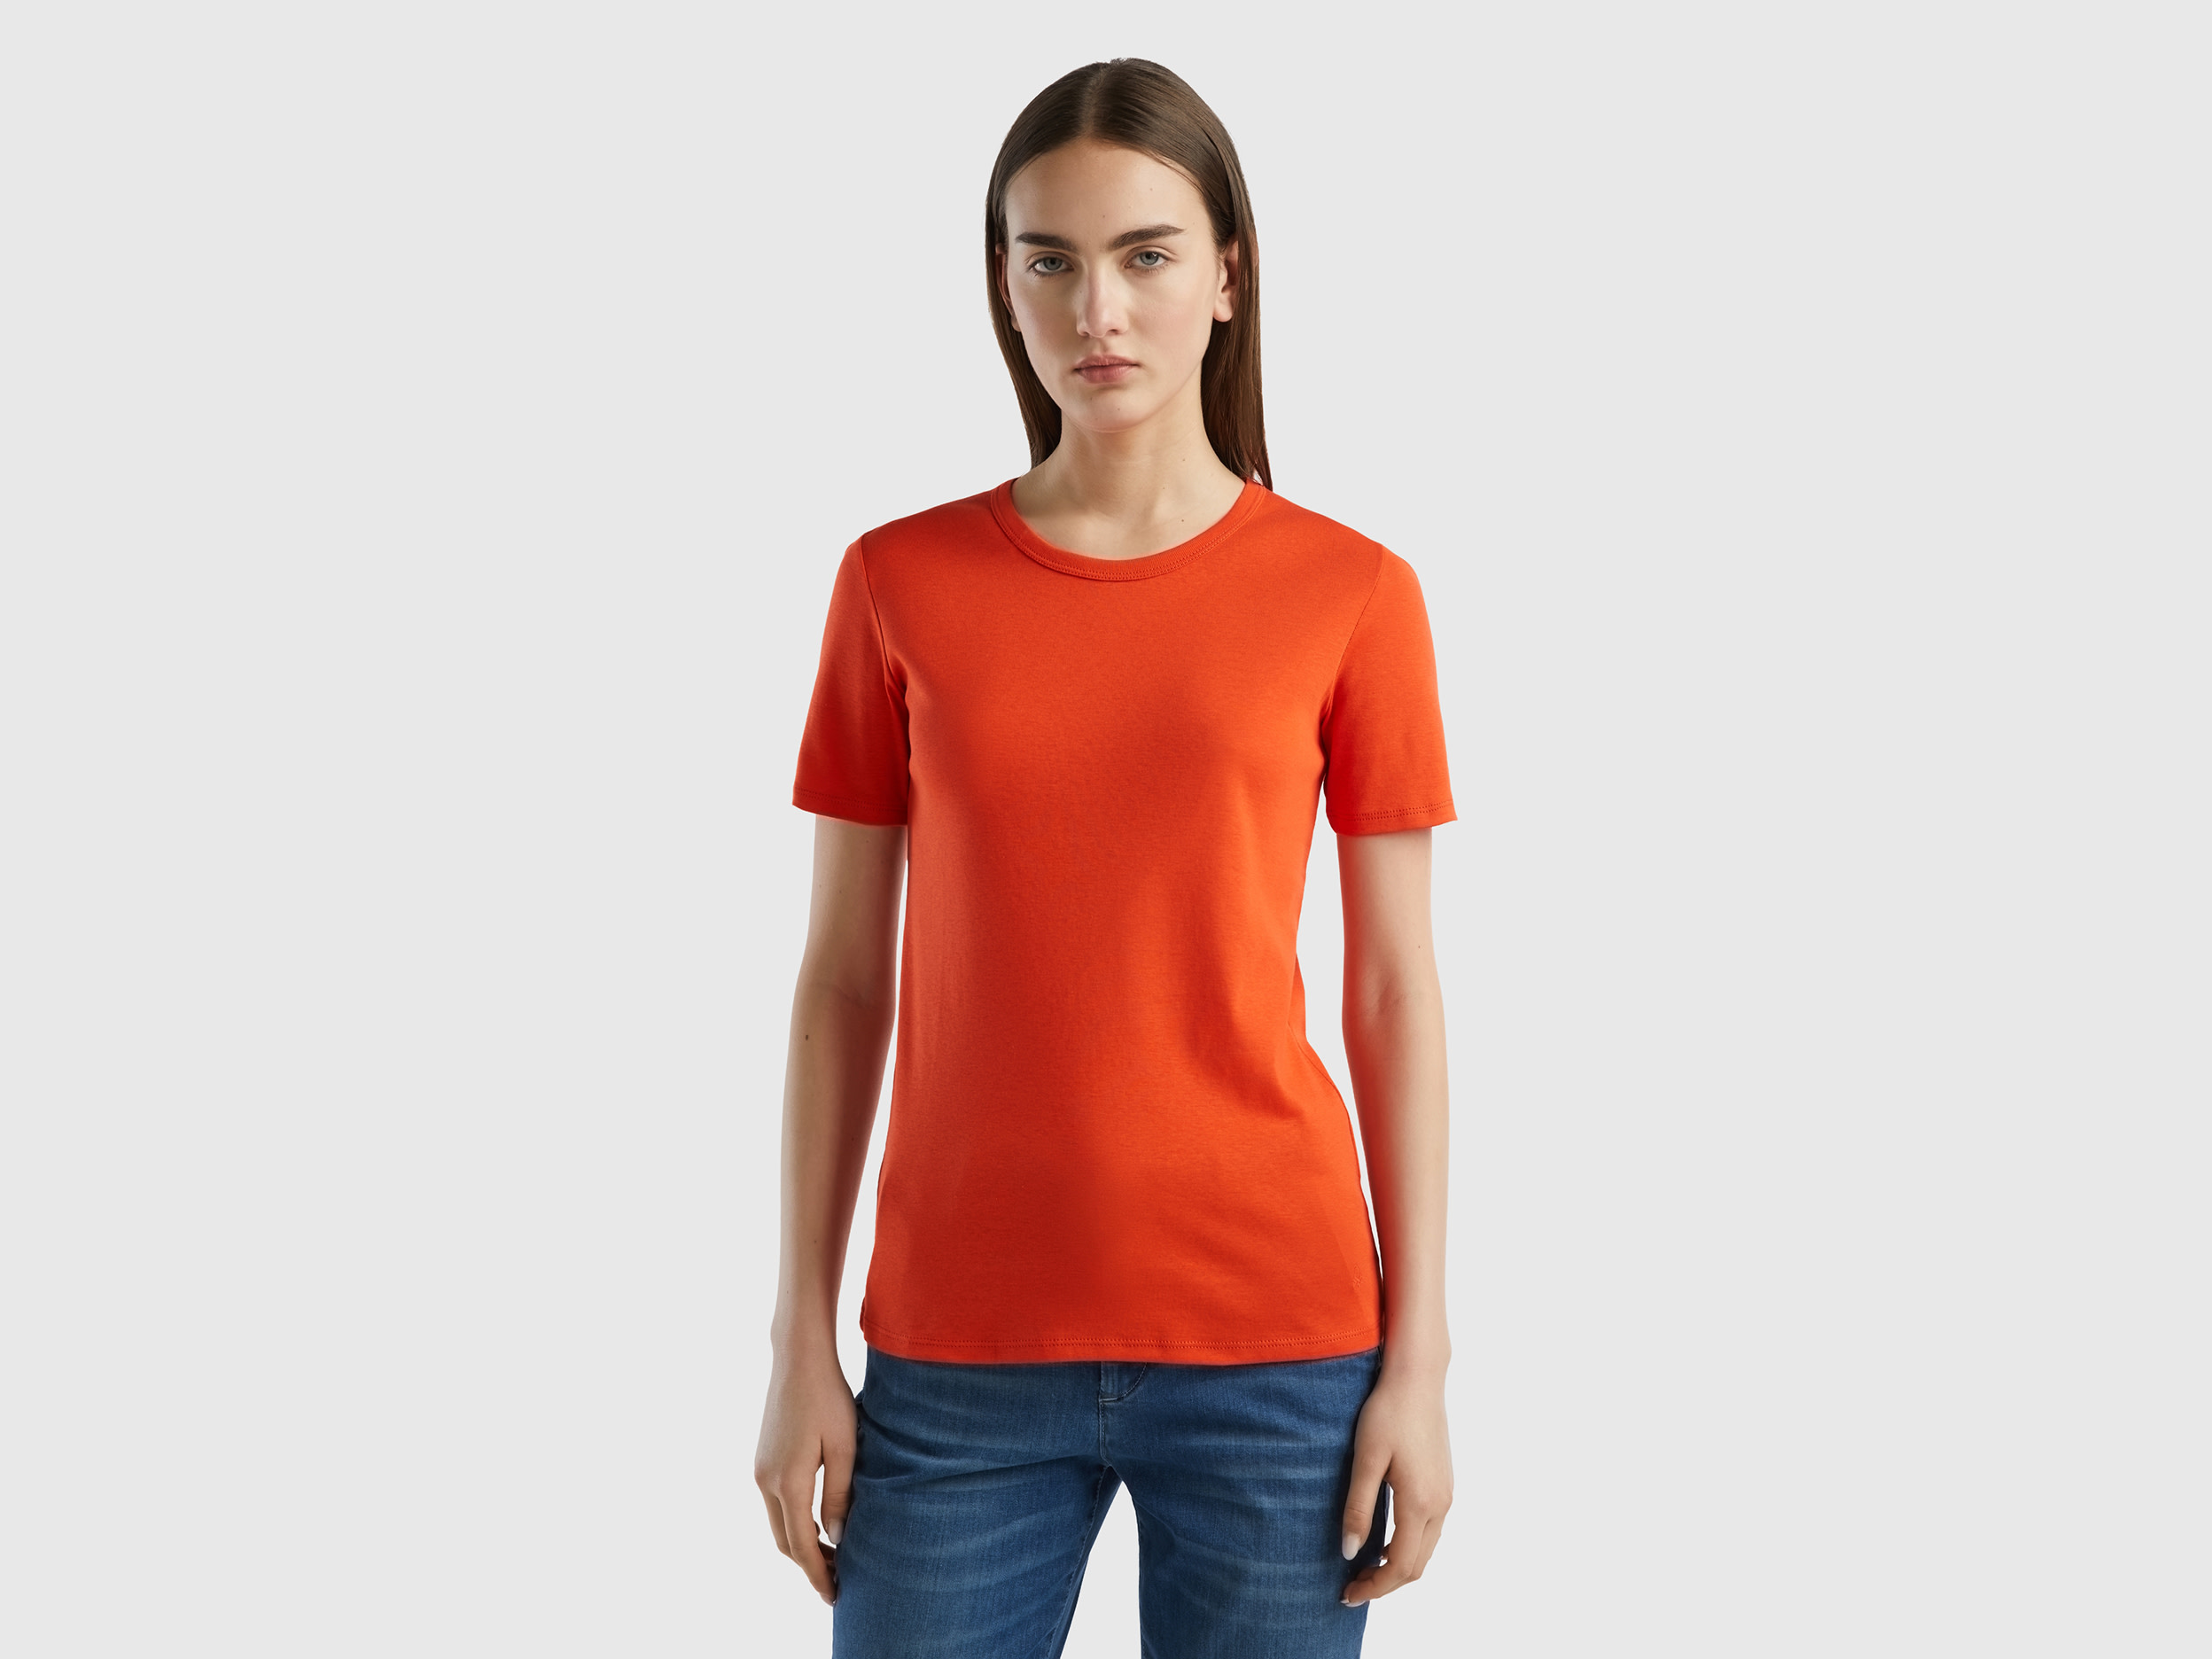 Benetton, Long Fiber Cotton T-shirt, size XXS, Red, Women